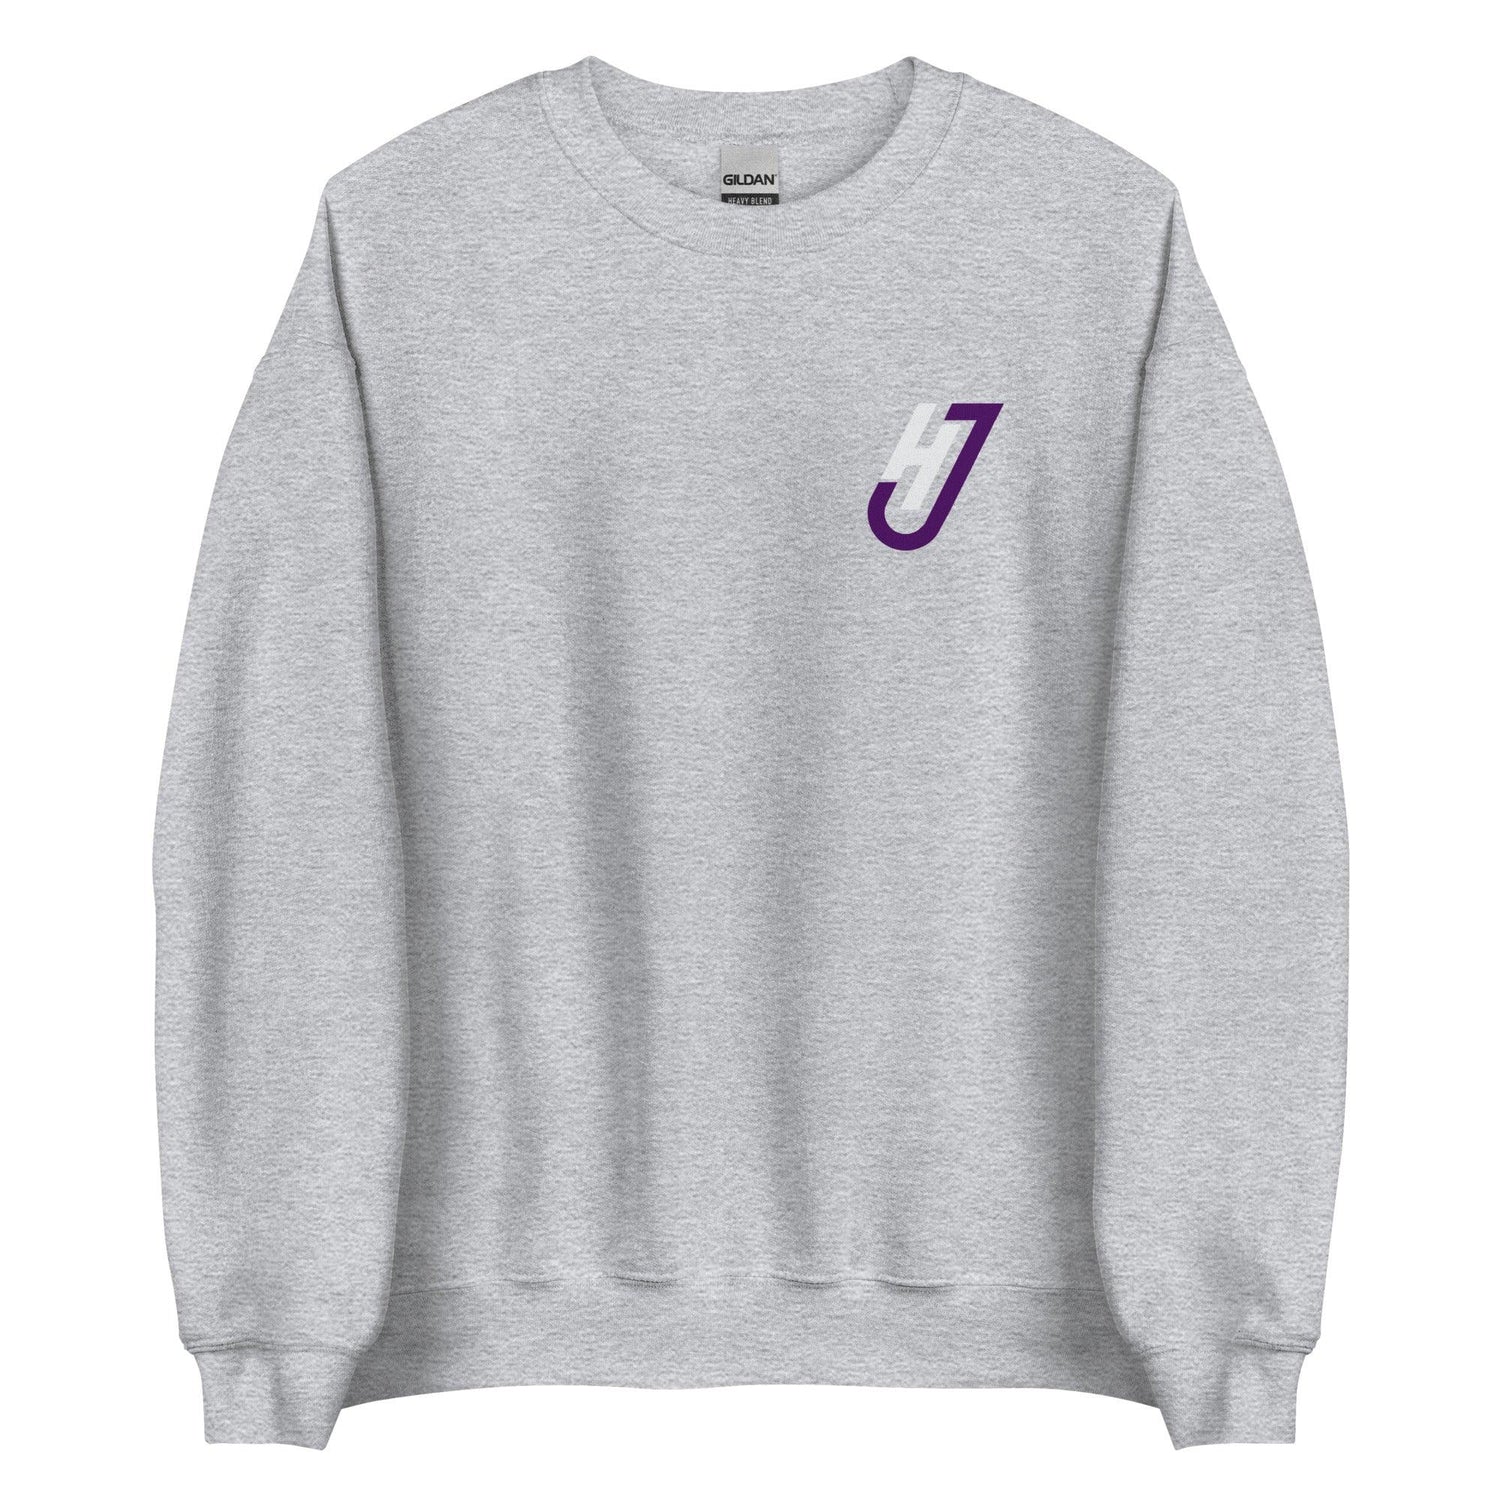 Justice Hill “JH” Sweatshirt - Fan Arch